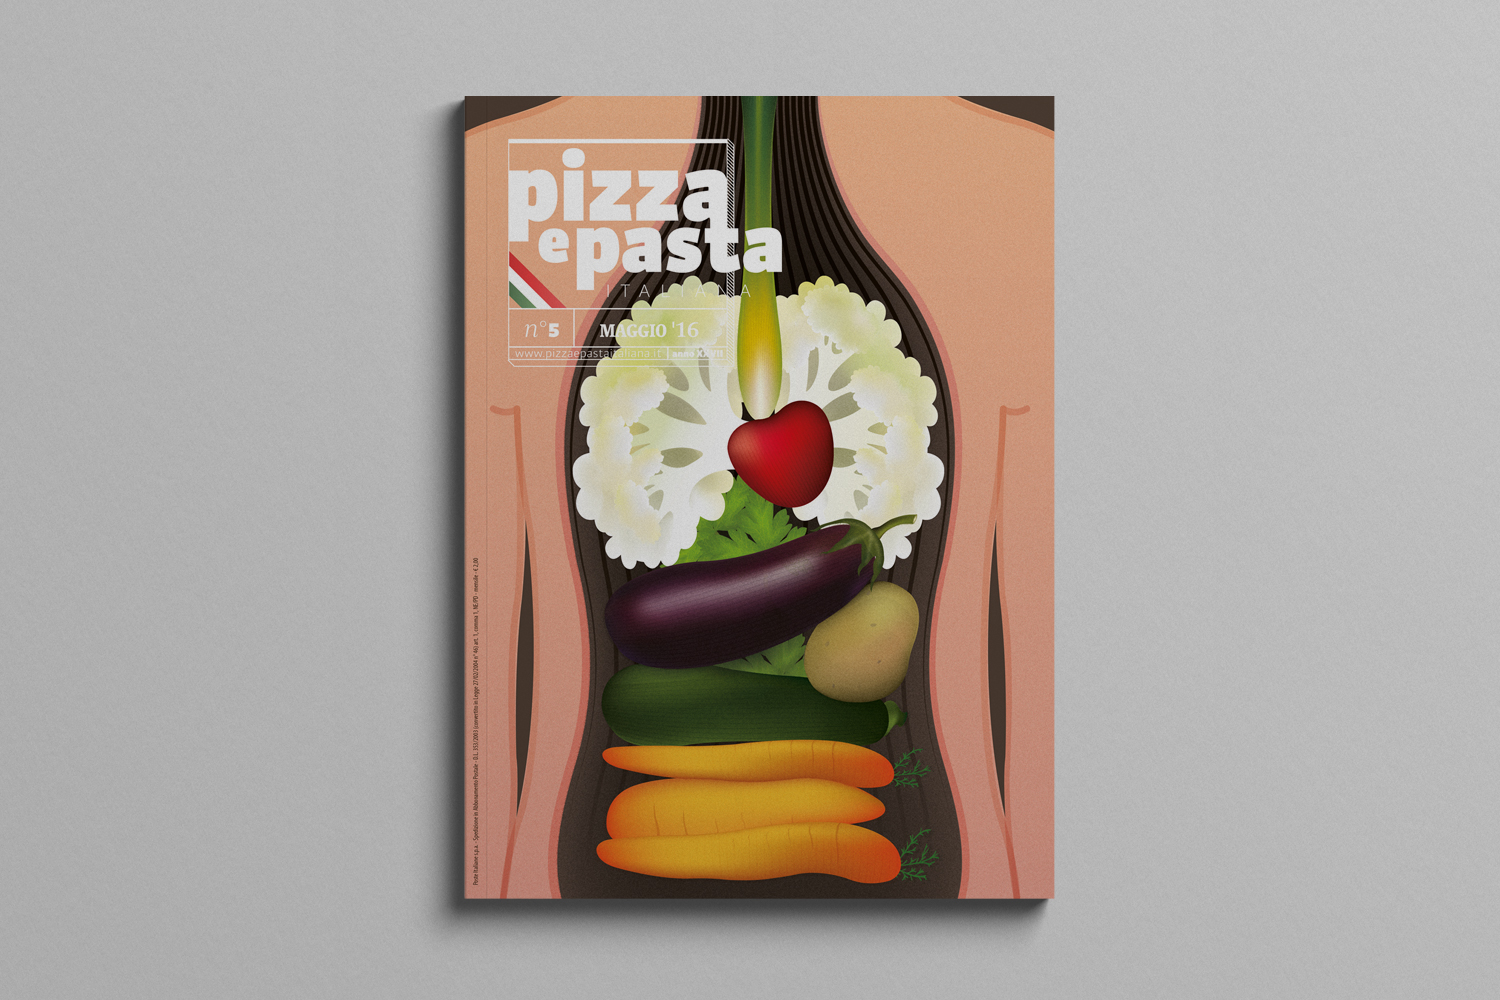 Pizza e pasta illustrazione mangiare sano healthy food